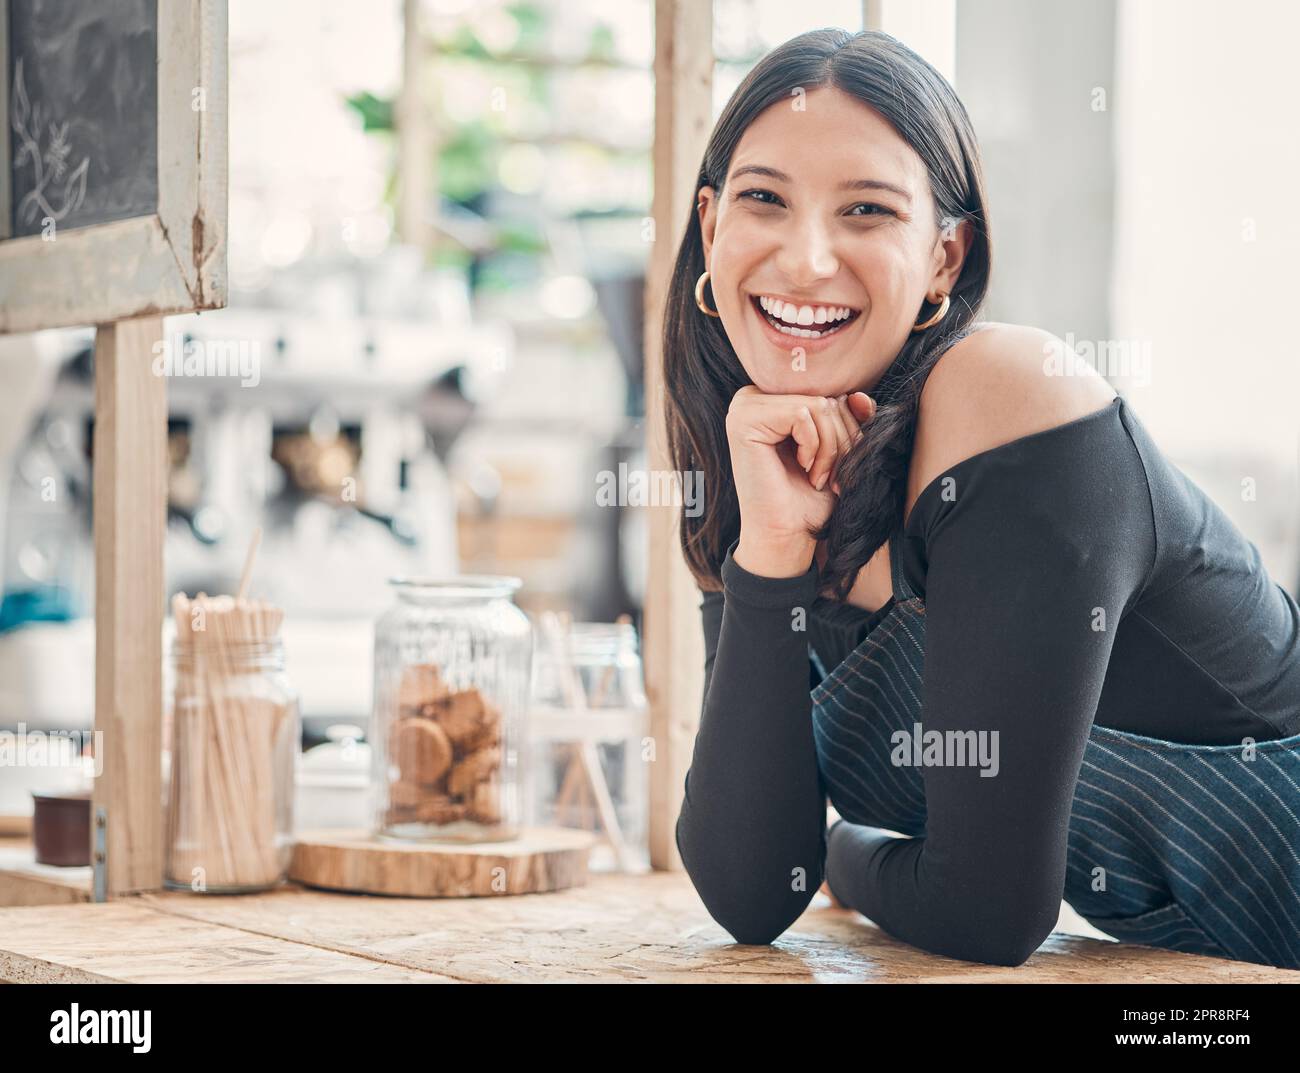 Portrait d'une jeune serveuse hispanique heureuse travaillant dans un magasin ou un café. Femme sympathique et propriétaire d'un café qui a réussi à démarrer un restaurant Banque D'Images